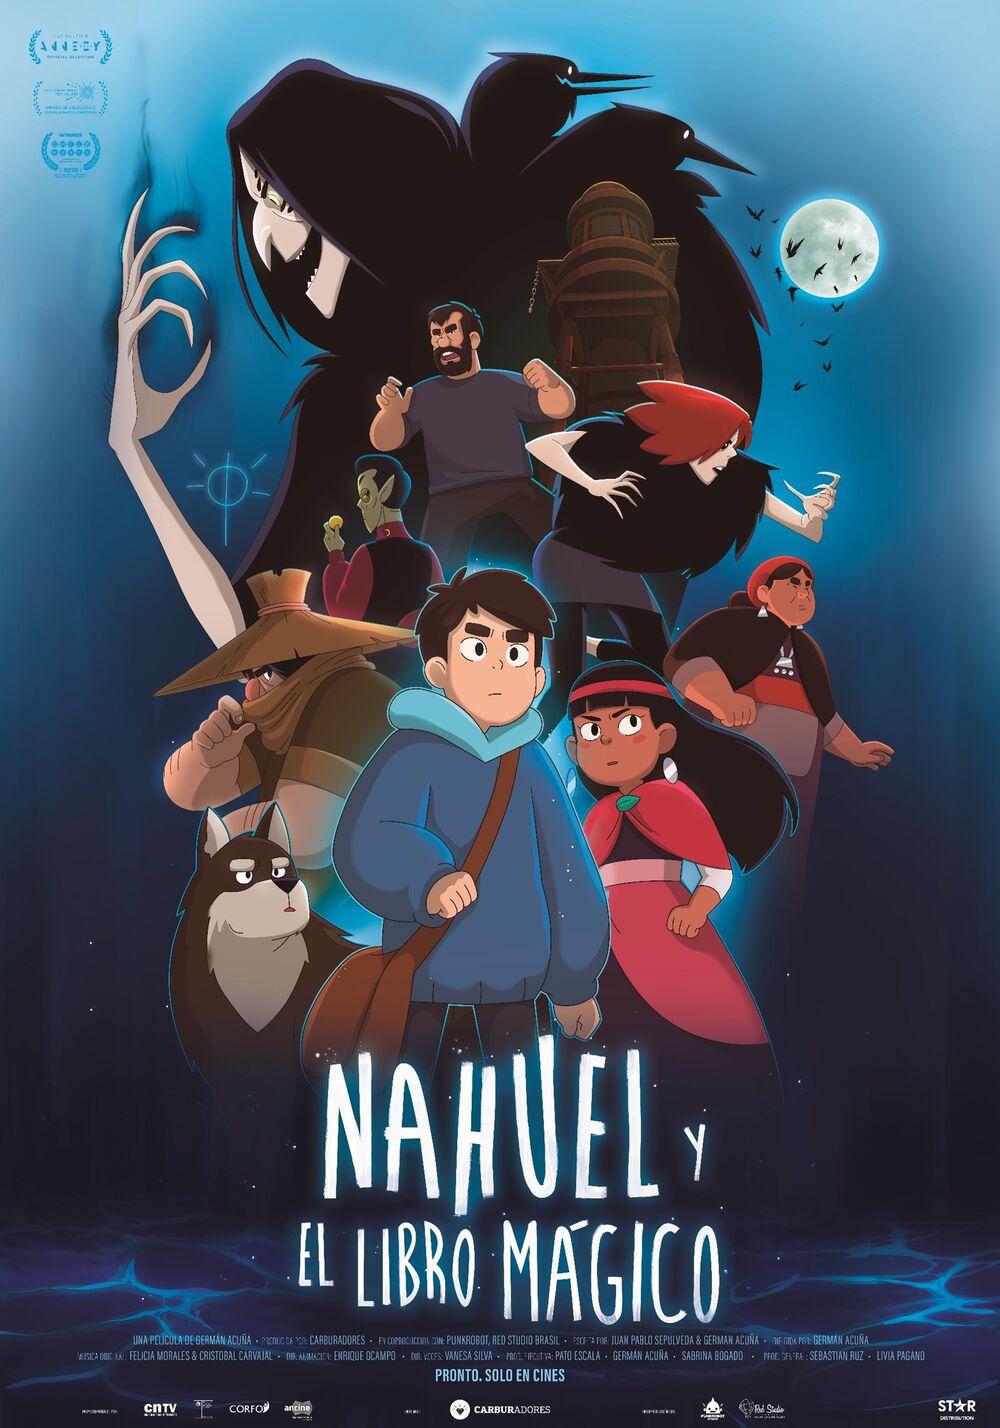  Crítica de cine: Nahuel y el libro mágico